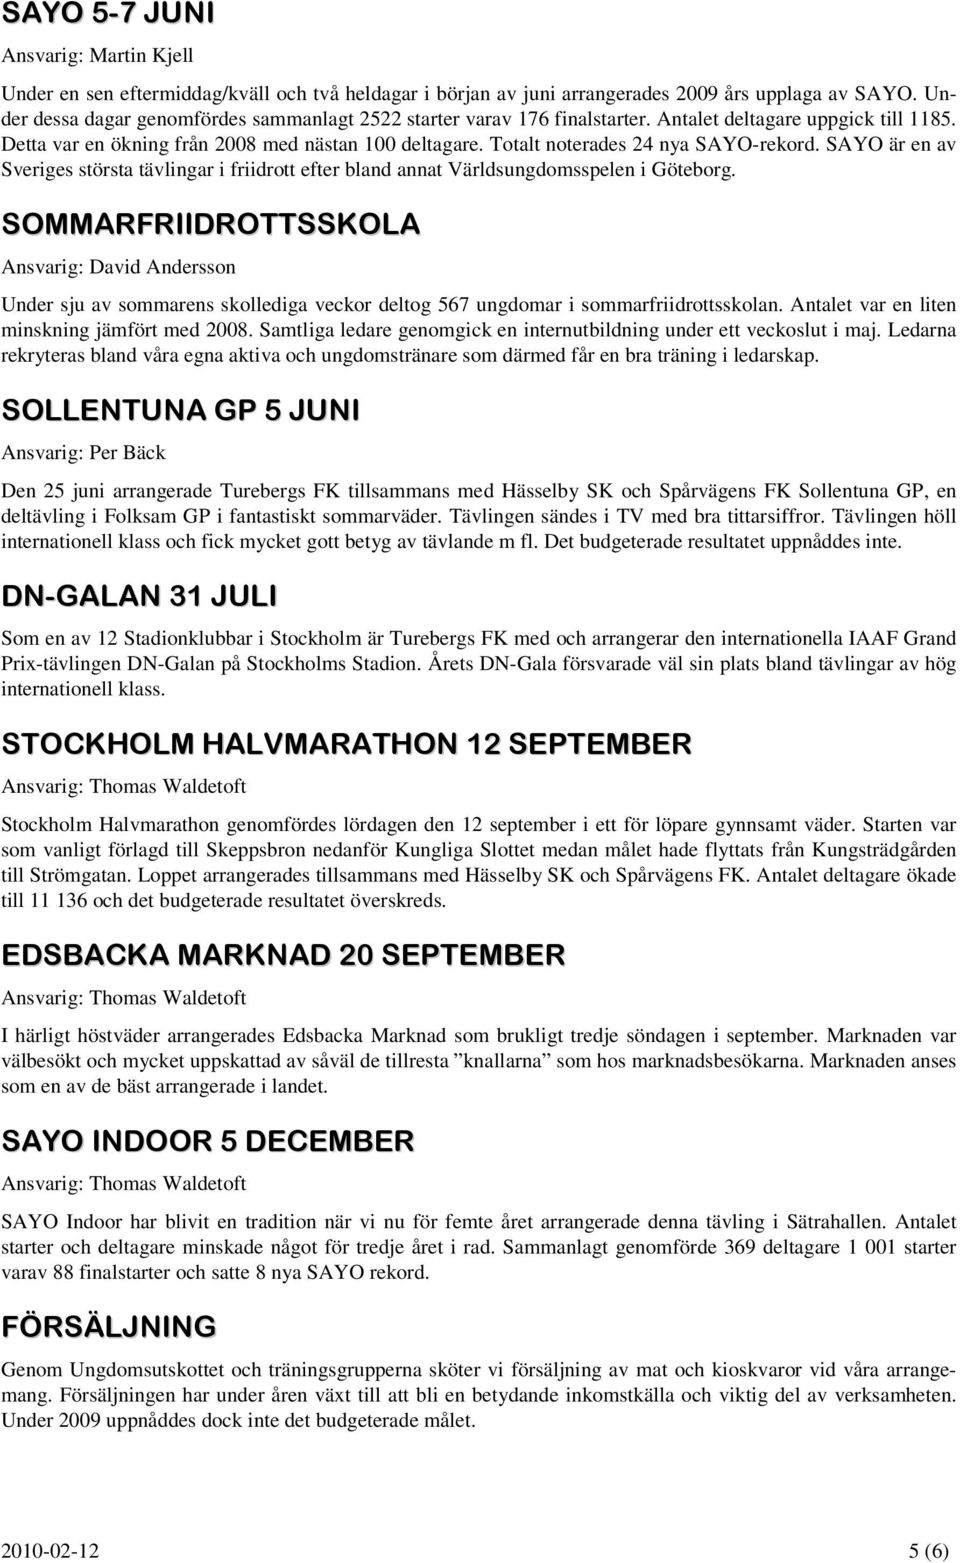 Totalt noterades 24 nya SAYO-rekord. SAYO är en av Sveriges största tävlingar i friidrott efter bland annat Världsungdomsspelen i Göteborg.